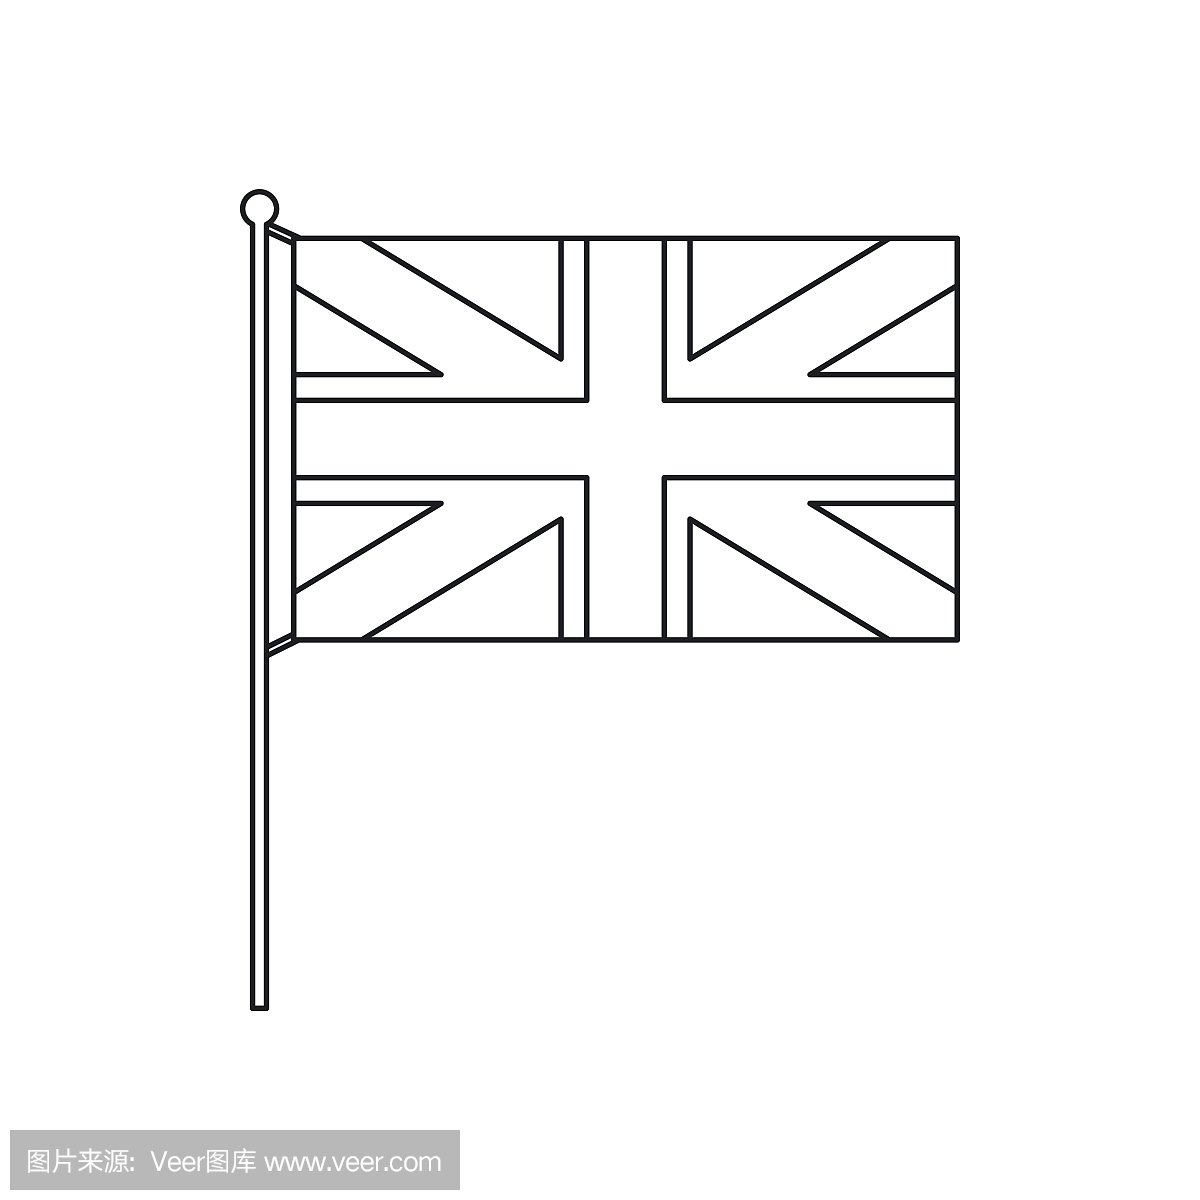 英国国旗图标,大纲风格